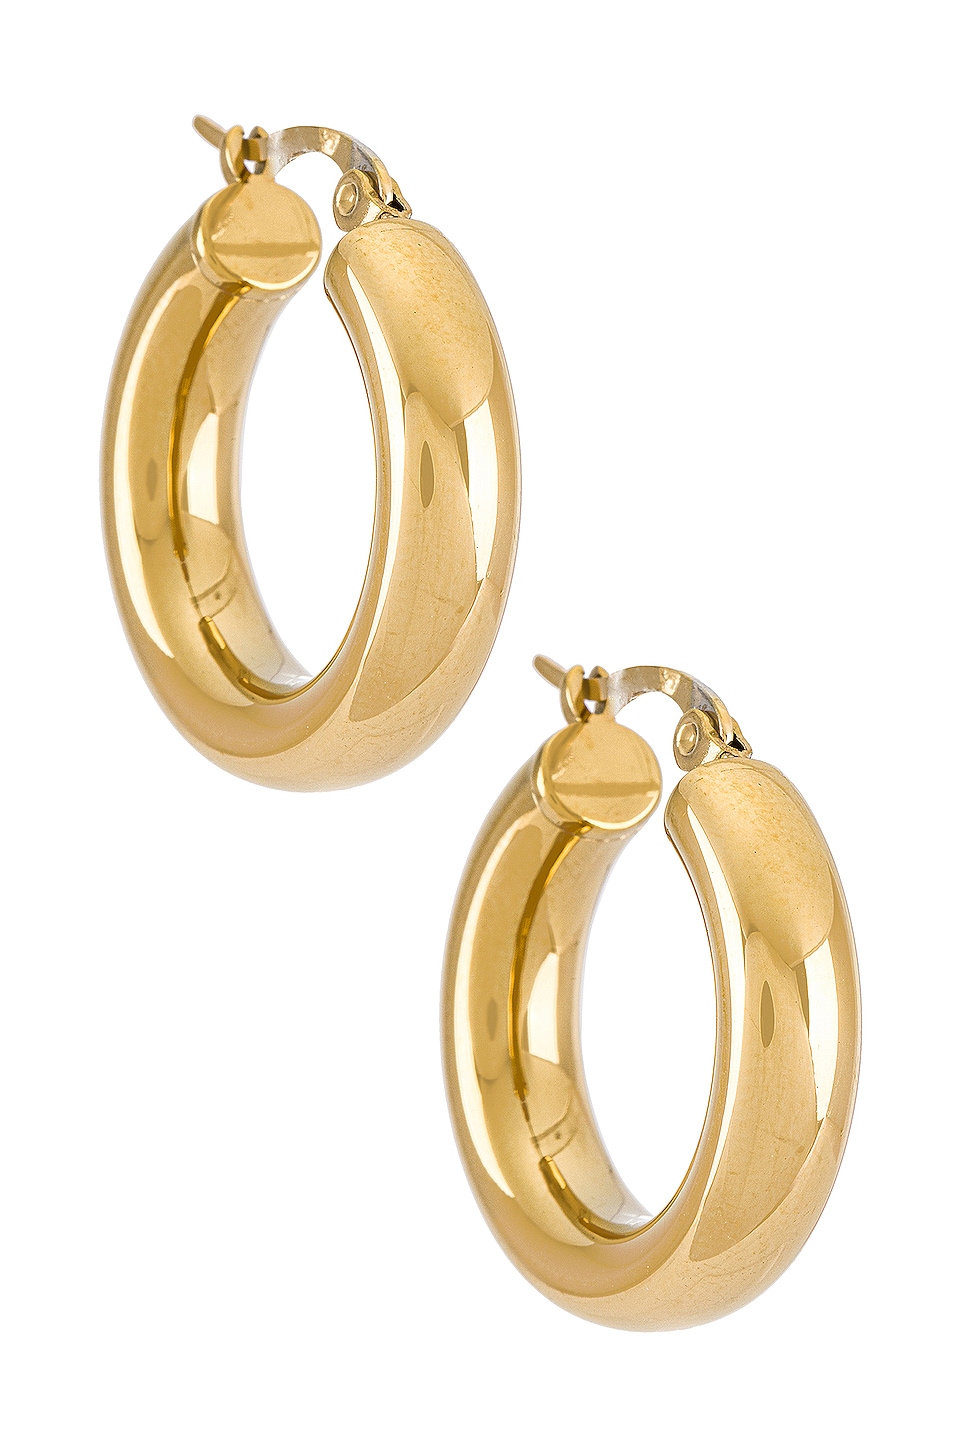 Triple Hoop Earring in Metallic Gold. Revolve Women Accessories Jewelry Earrings Hoop 